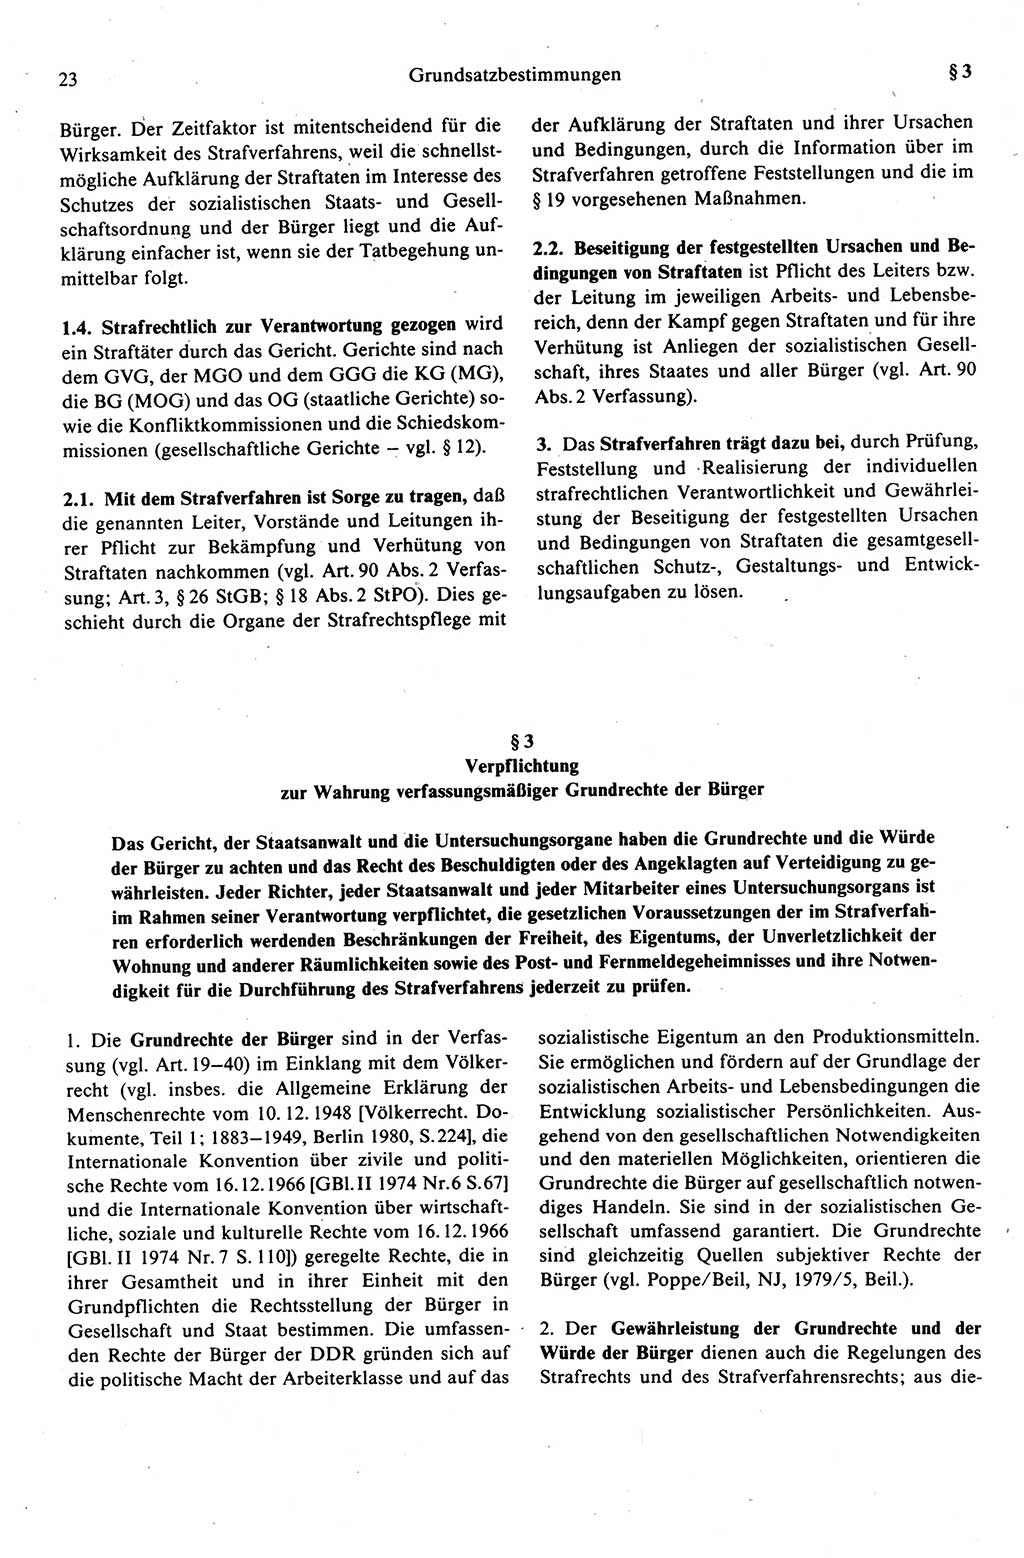 Strafprozeßrecht der DDR (Deutsche Demokratische Republik), Kommentar zur Strafprozeßordnung (StPO) 1989, Seite 23 (Strafprozeßr. DDR Komm. StPO 1989, S. 23)